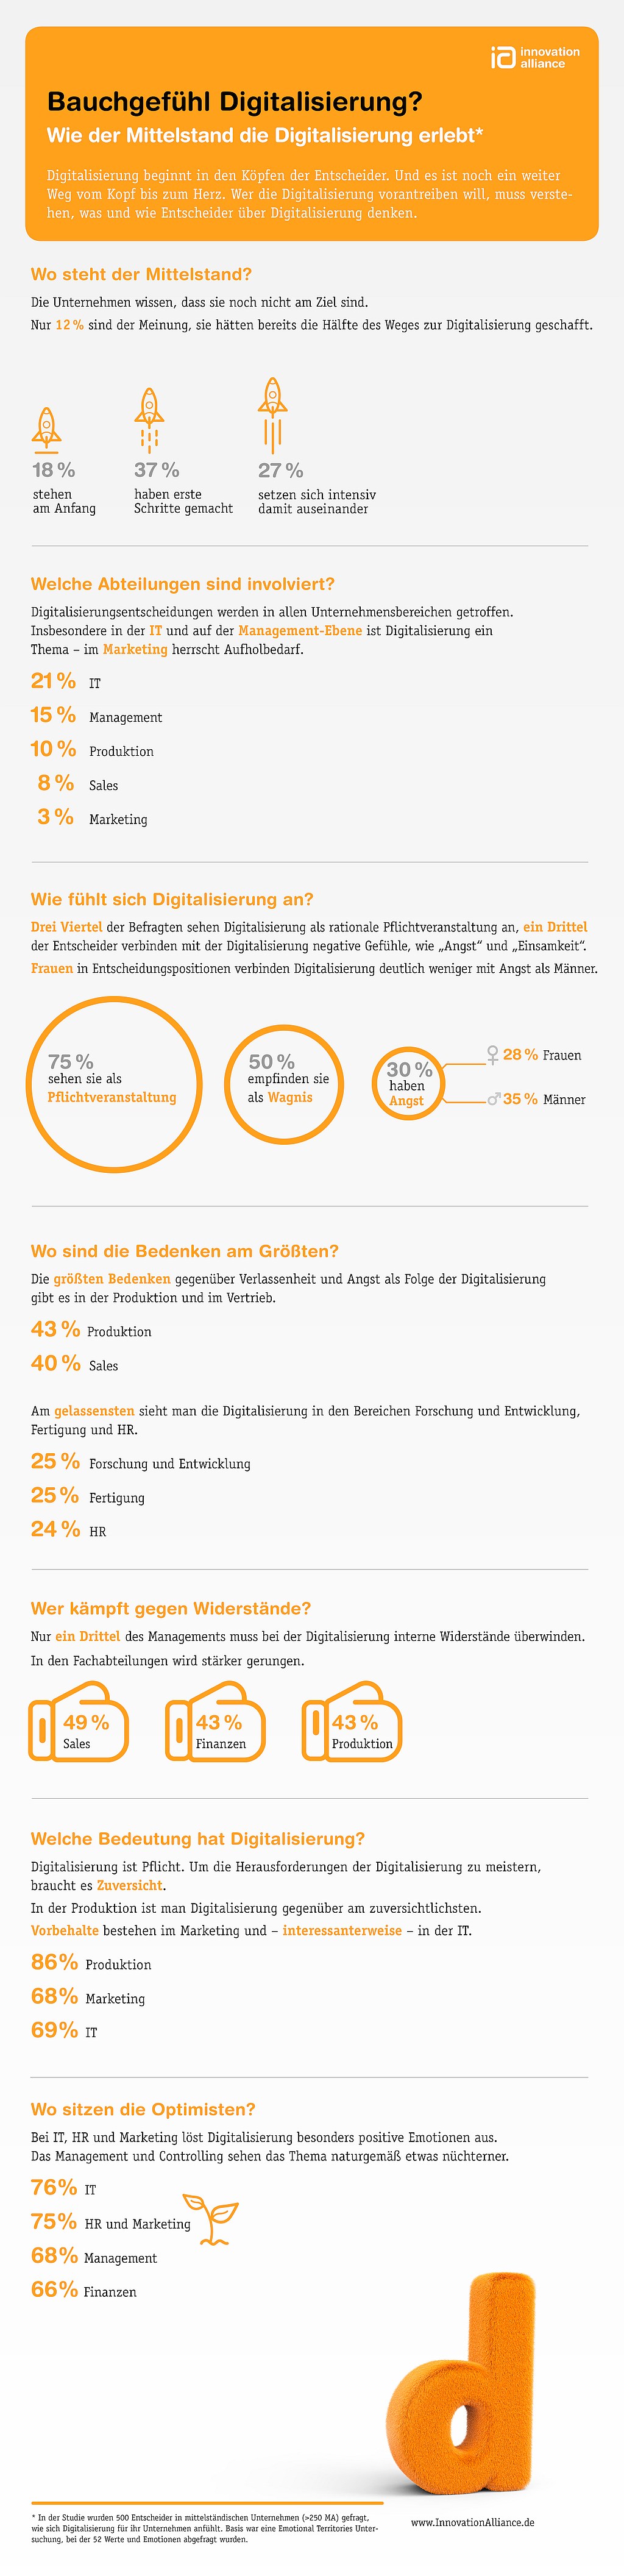 infografik innovation alliance Bauchgefuehl-Digitalisierung